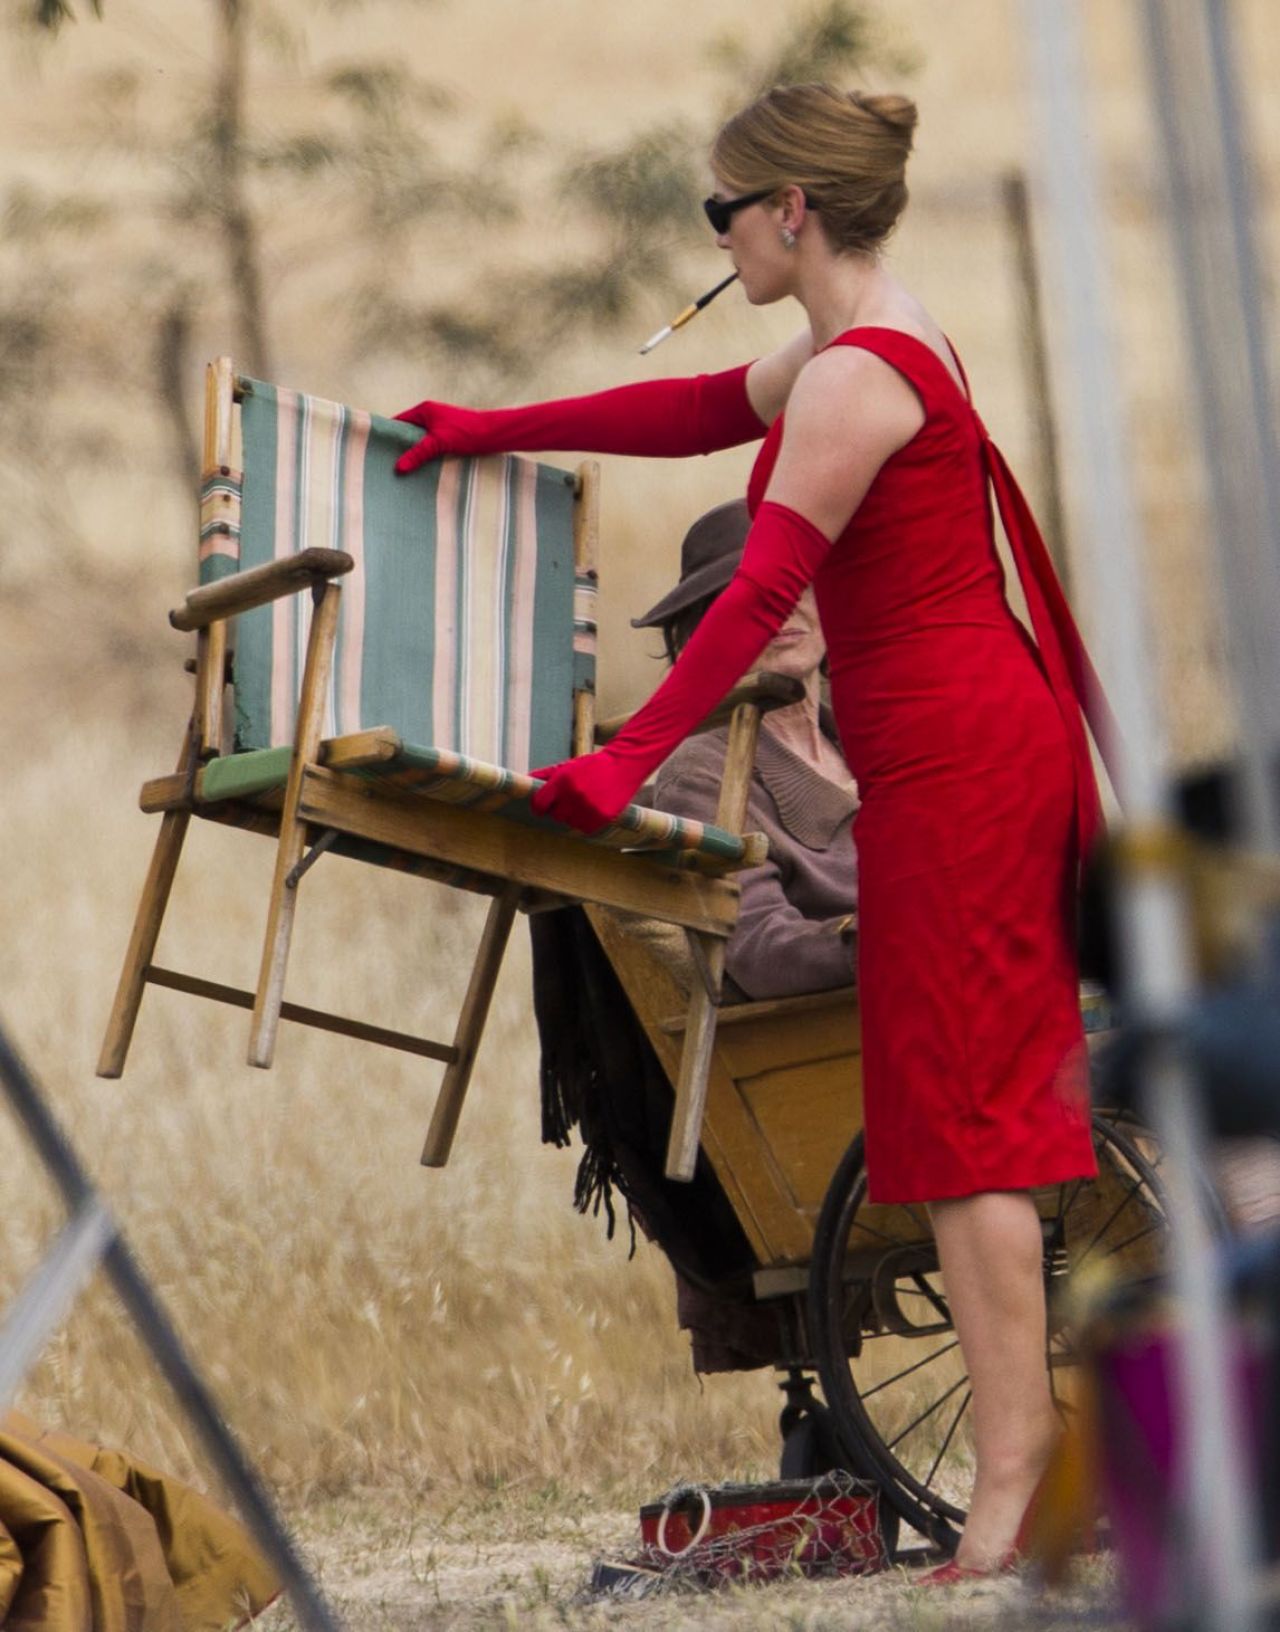 kate-winslet-booty-filming-the-dressmaker-in-australia-december-2014_25.